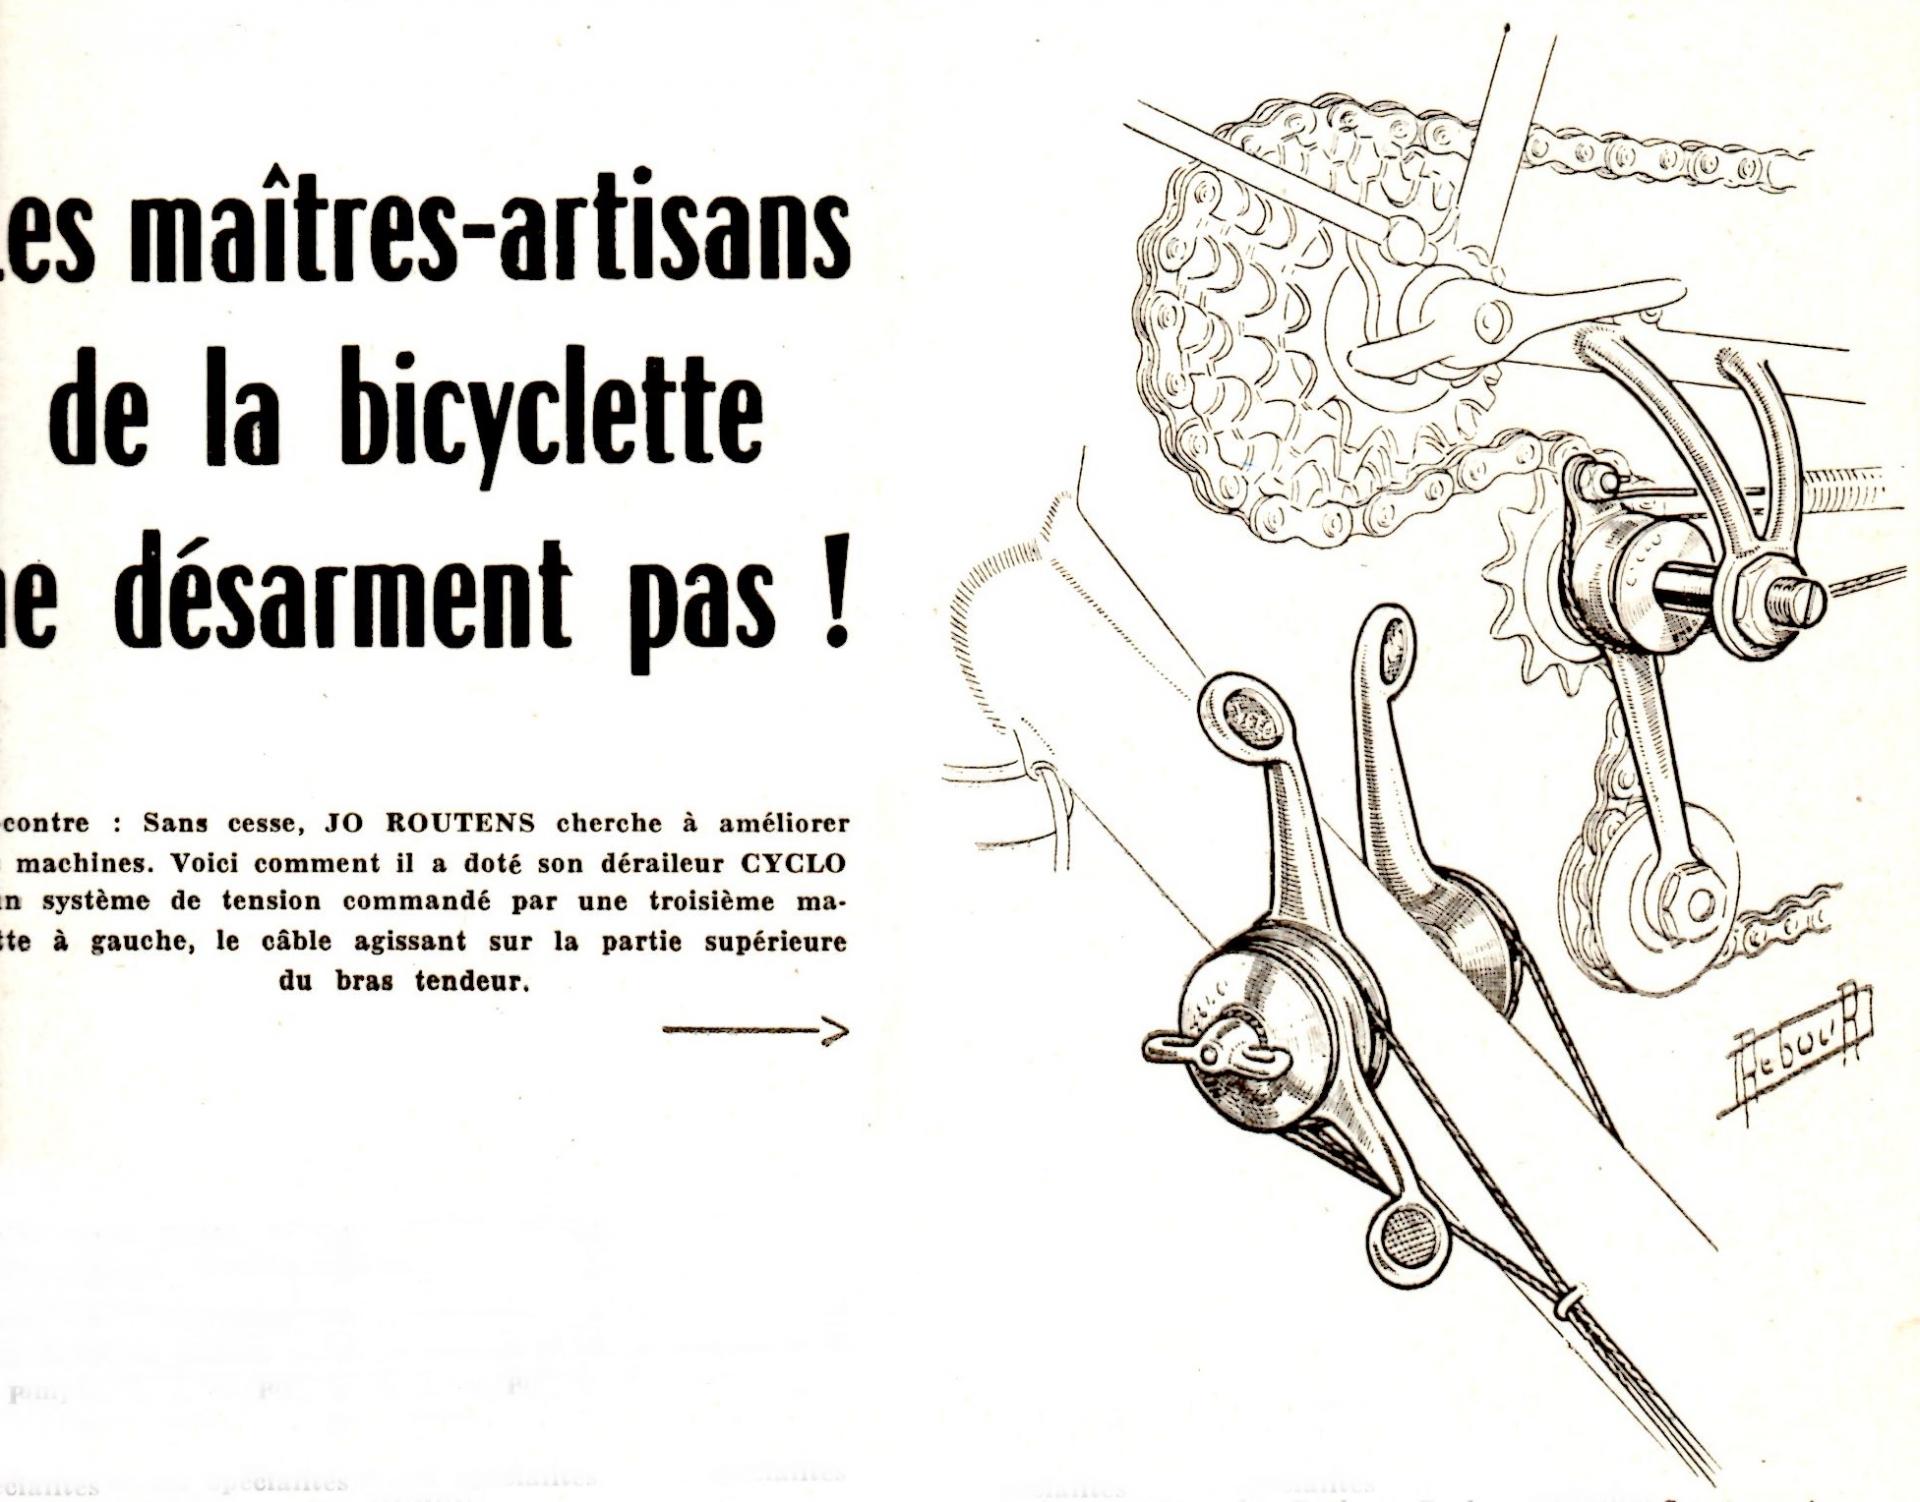 1957 modification derailleur cyclo par jo routens